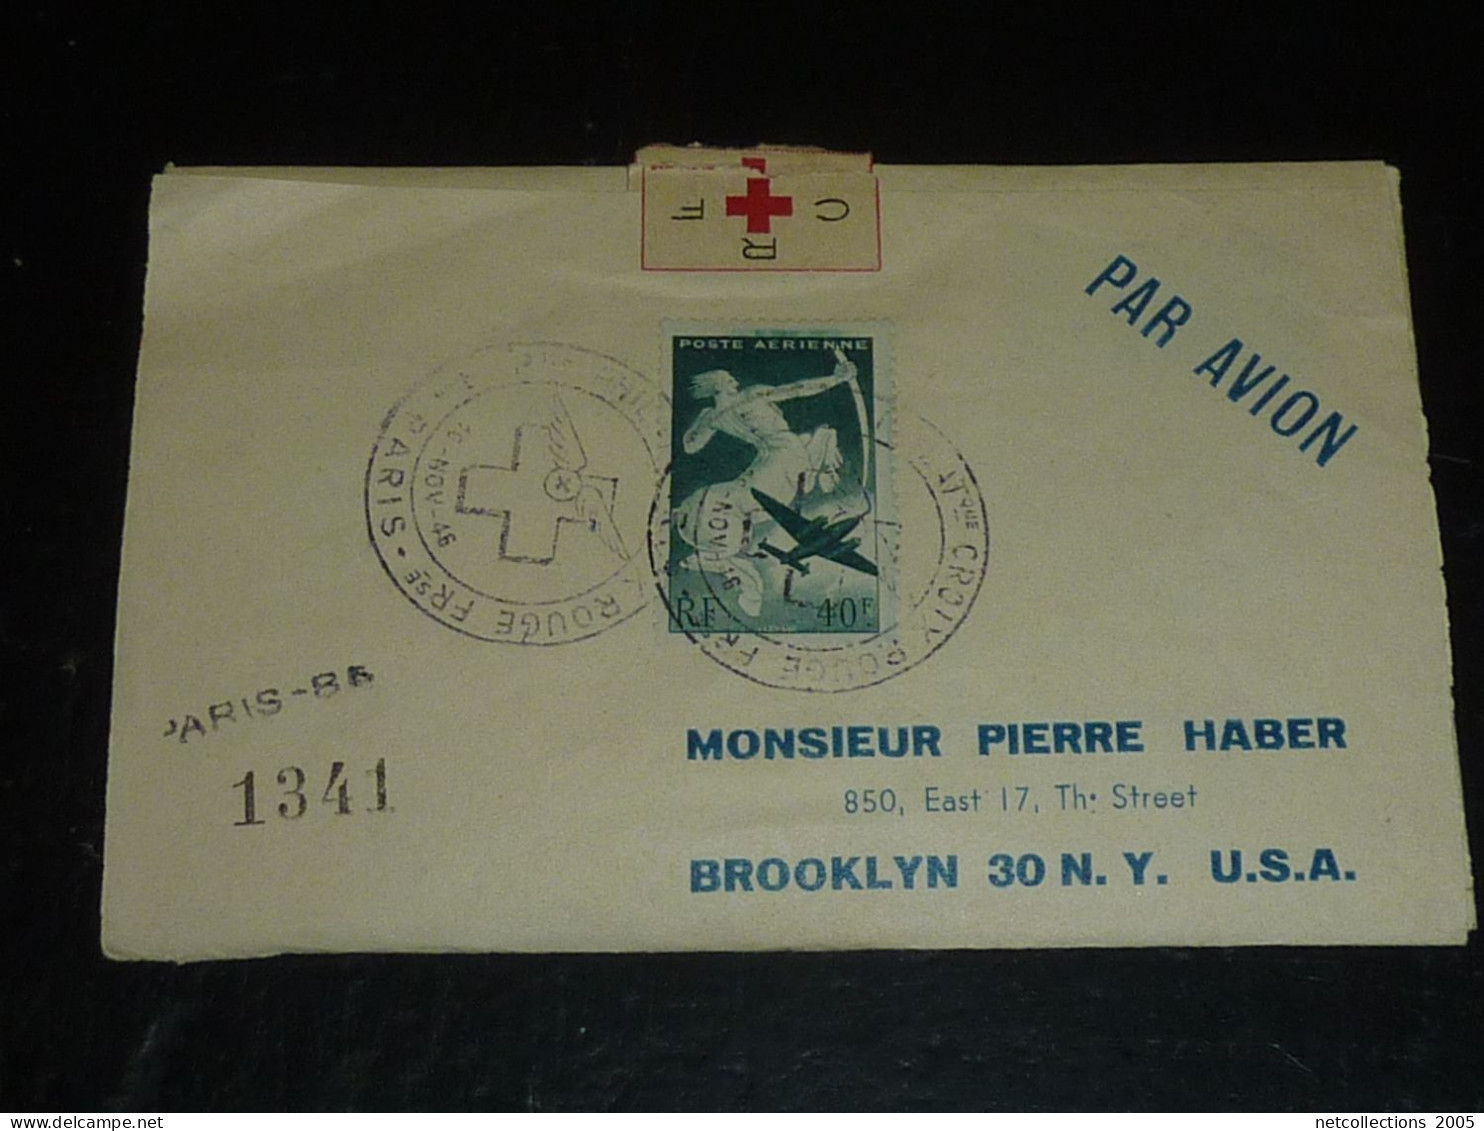 TOUR DU MONDE; CROIX ROUGE - PARIS NEW-YORK 18/11/1946 AU 21/11/1946 - NEW-YORK BRUXELLES - BRUXELLES PARIS ARRIVEE (CB) - Rode Kruis